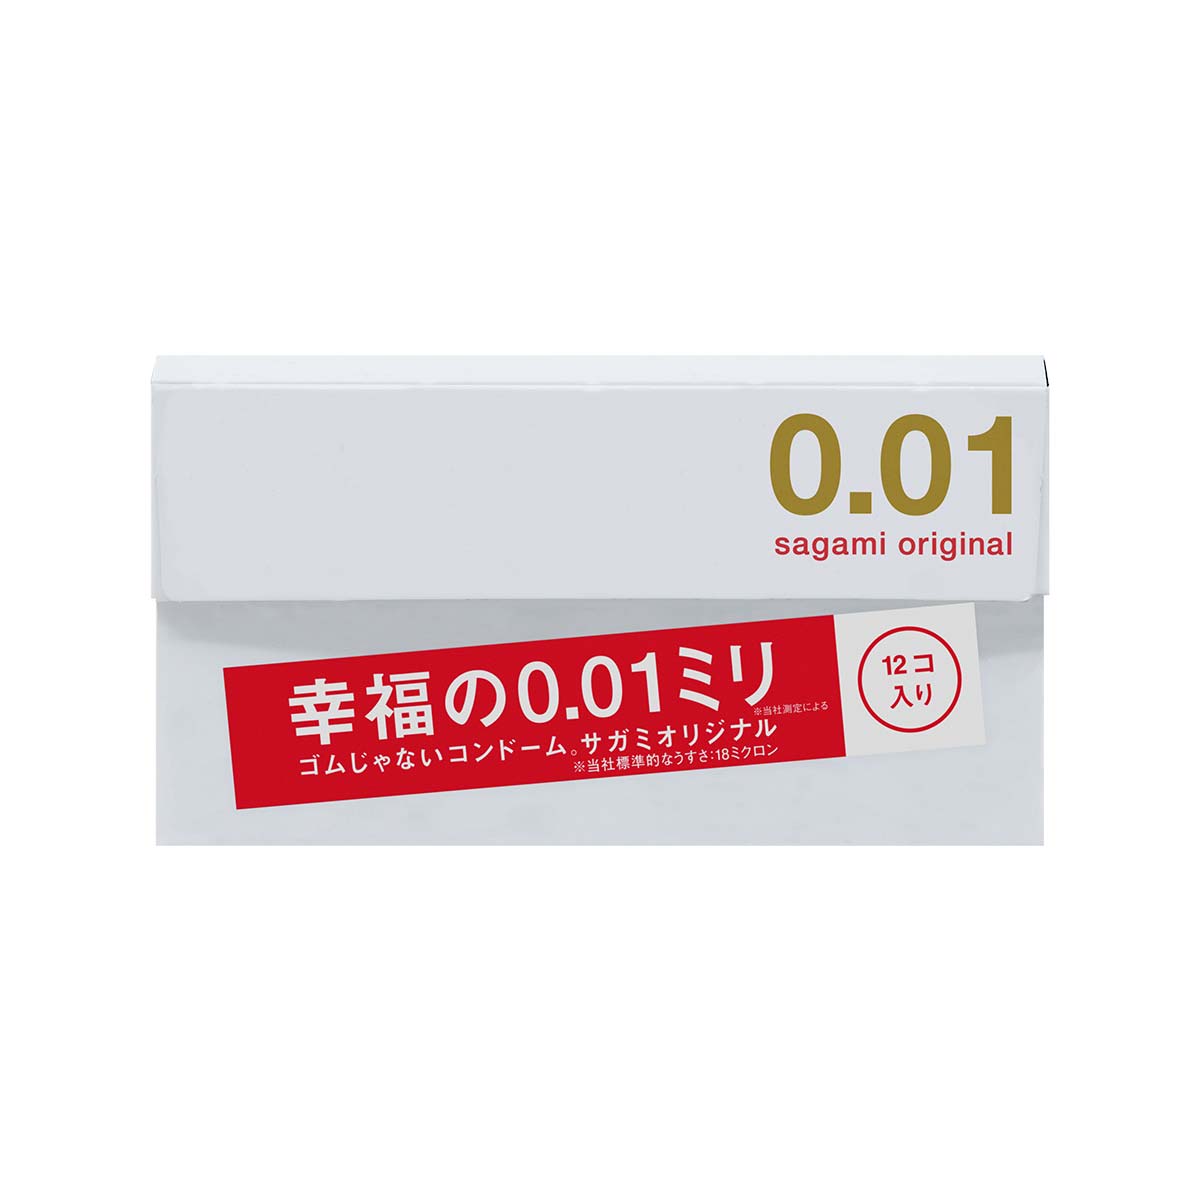 Sagami Original 0.01 12's Pack PU Condom-p_2